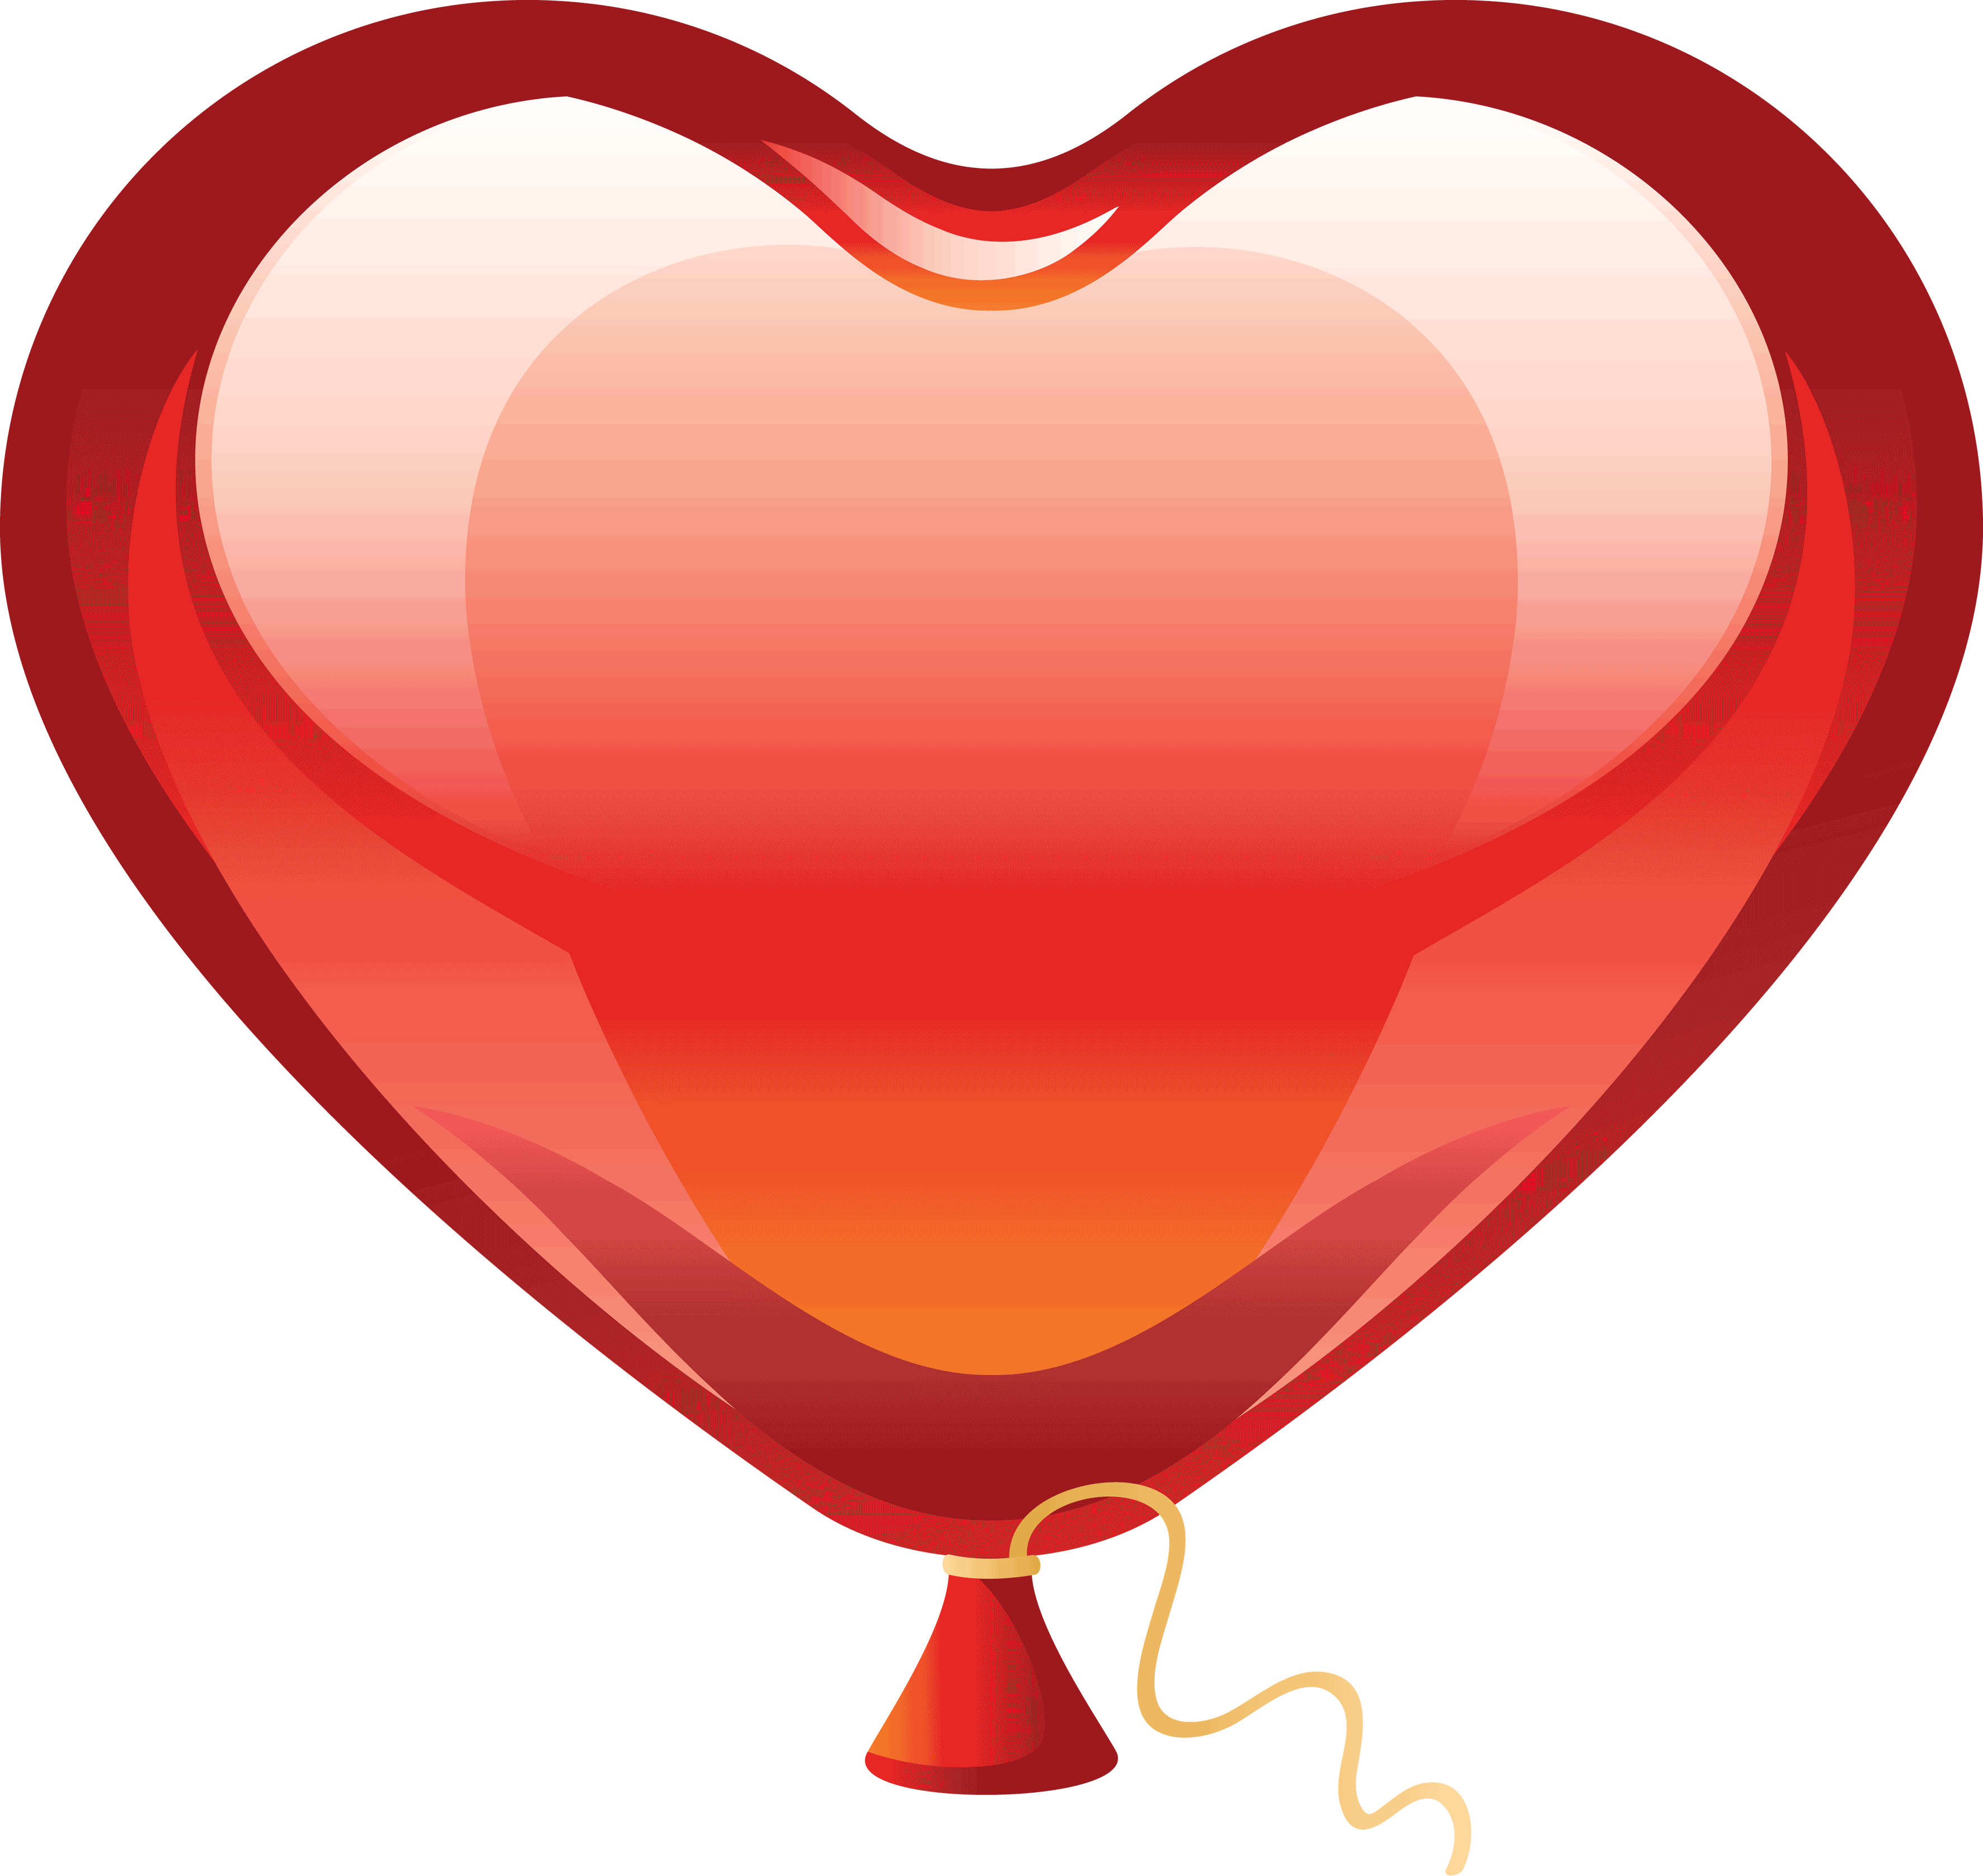 heart clipart balloon